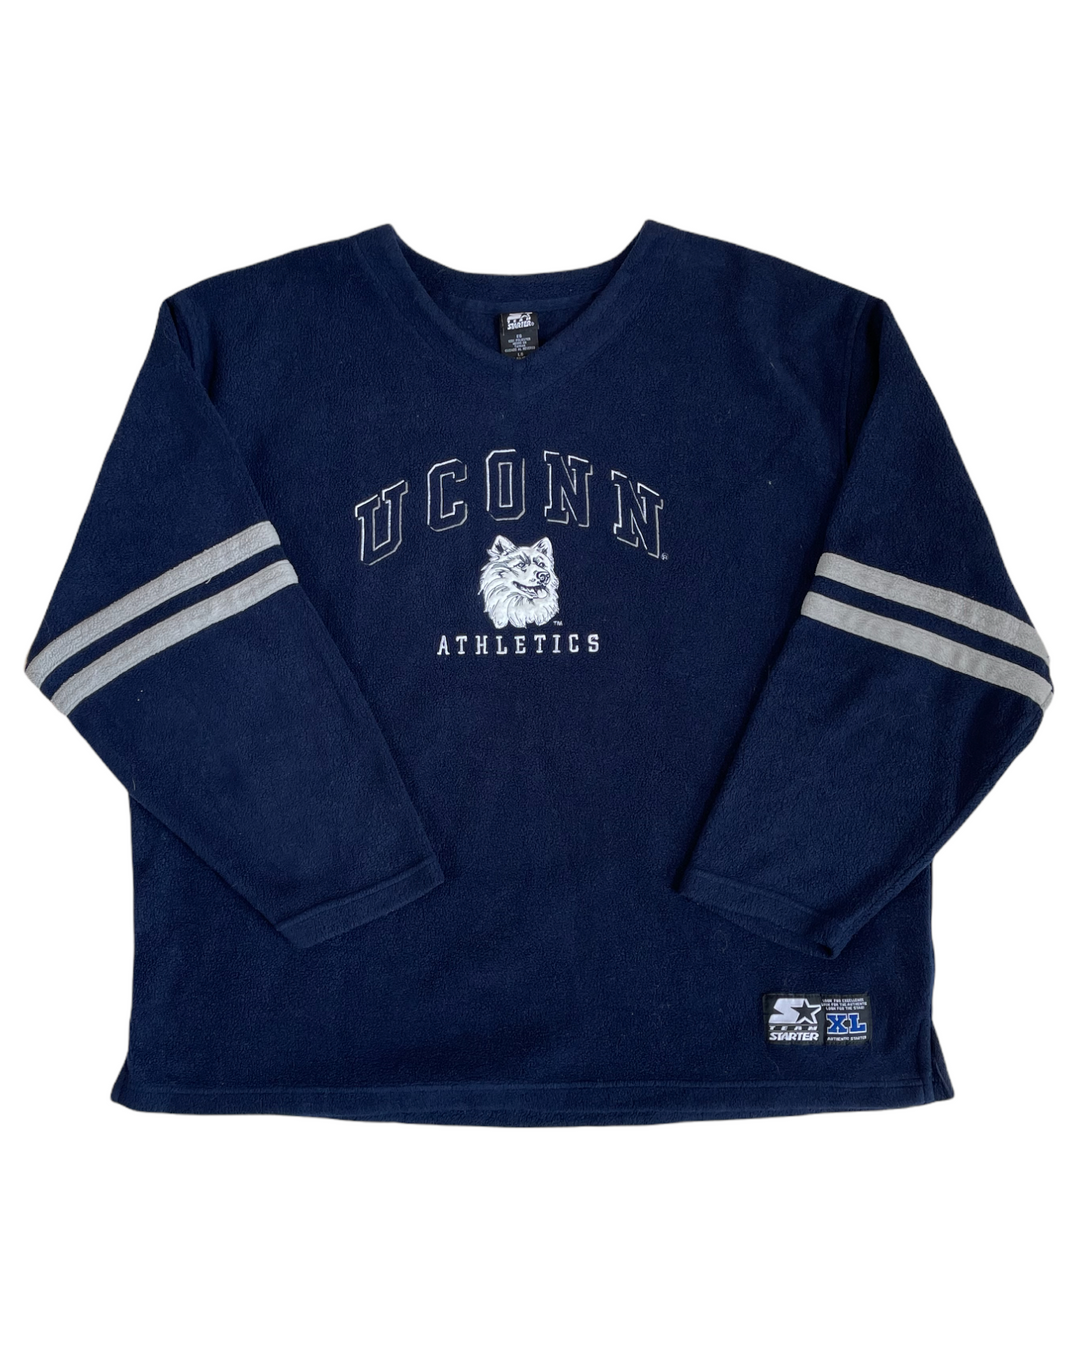 UConn Huskies Vintage Sweatshirt